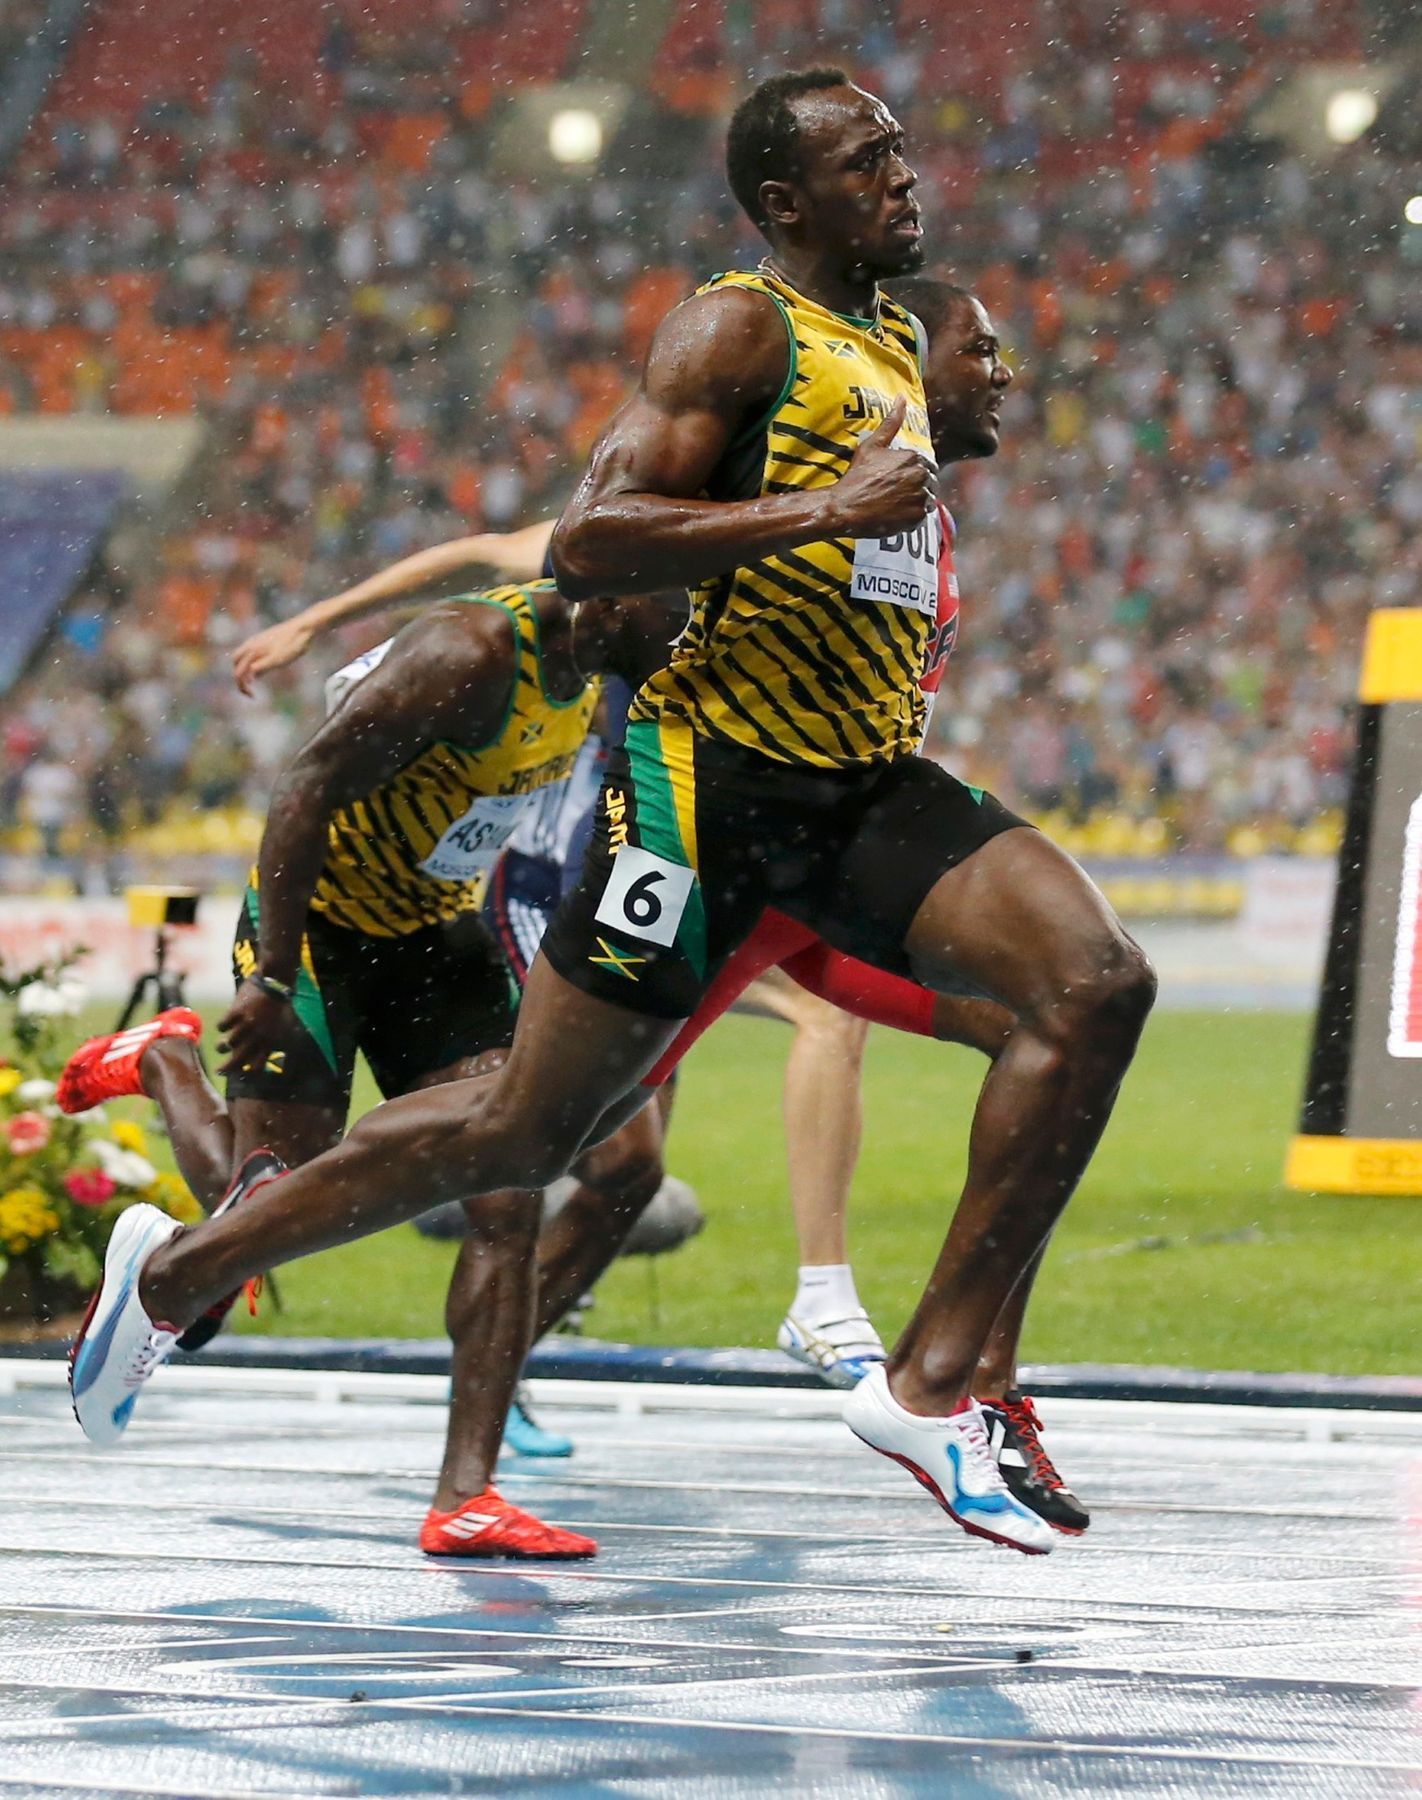 MS v atletice 2013, 100 m - finále: Usain Bolt